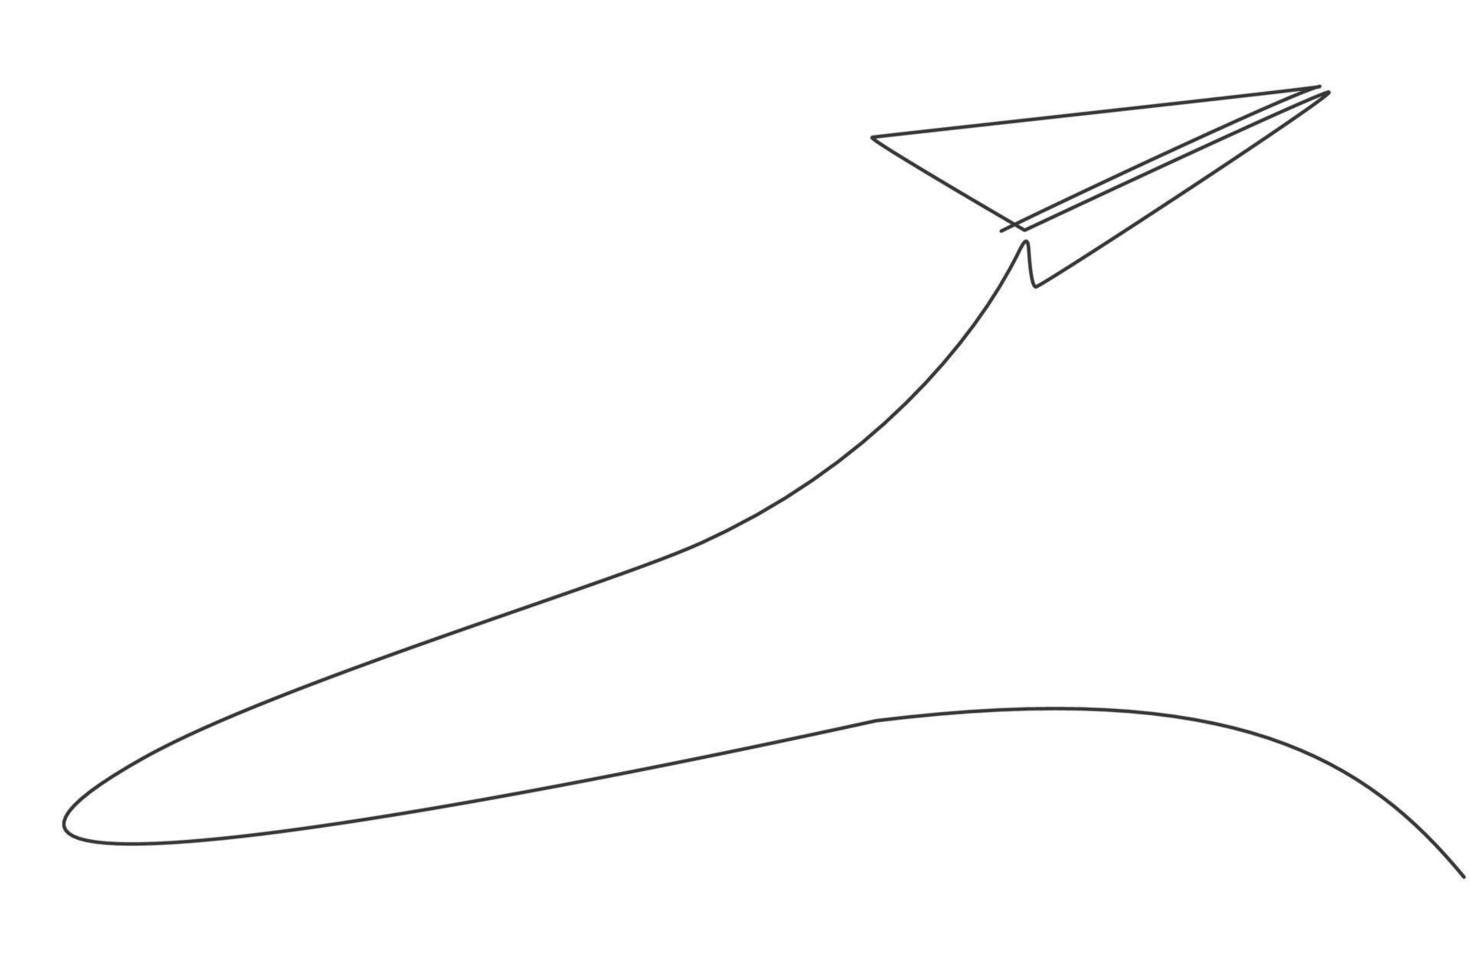 enkele een lijntekening van papieren vliegtuigje vliegen hoog naar de hemel op een witte achtergrond. papieren luchtvaartuig origami kinderspelconcept. moderne doorlopende lijn tekenen ontwerp grafische vectorillustratie vector